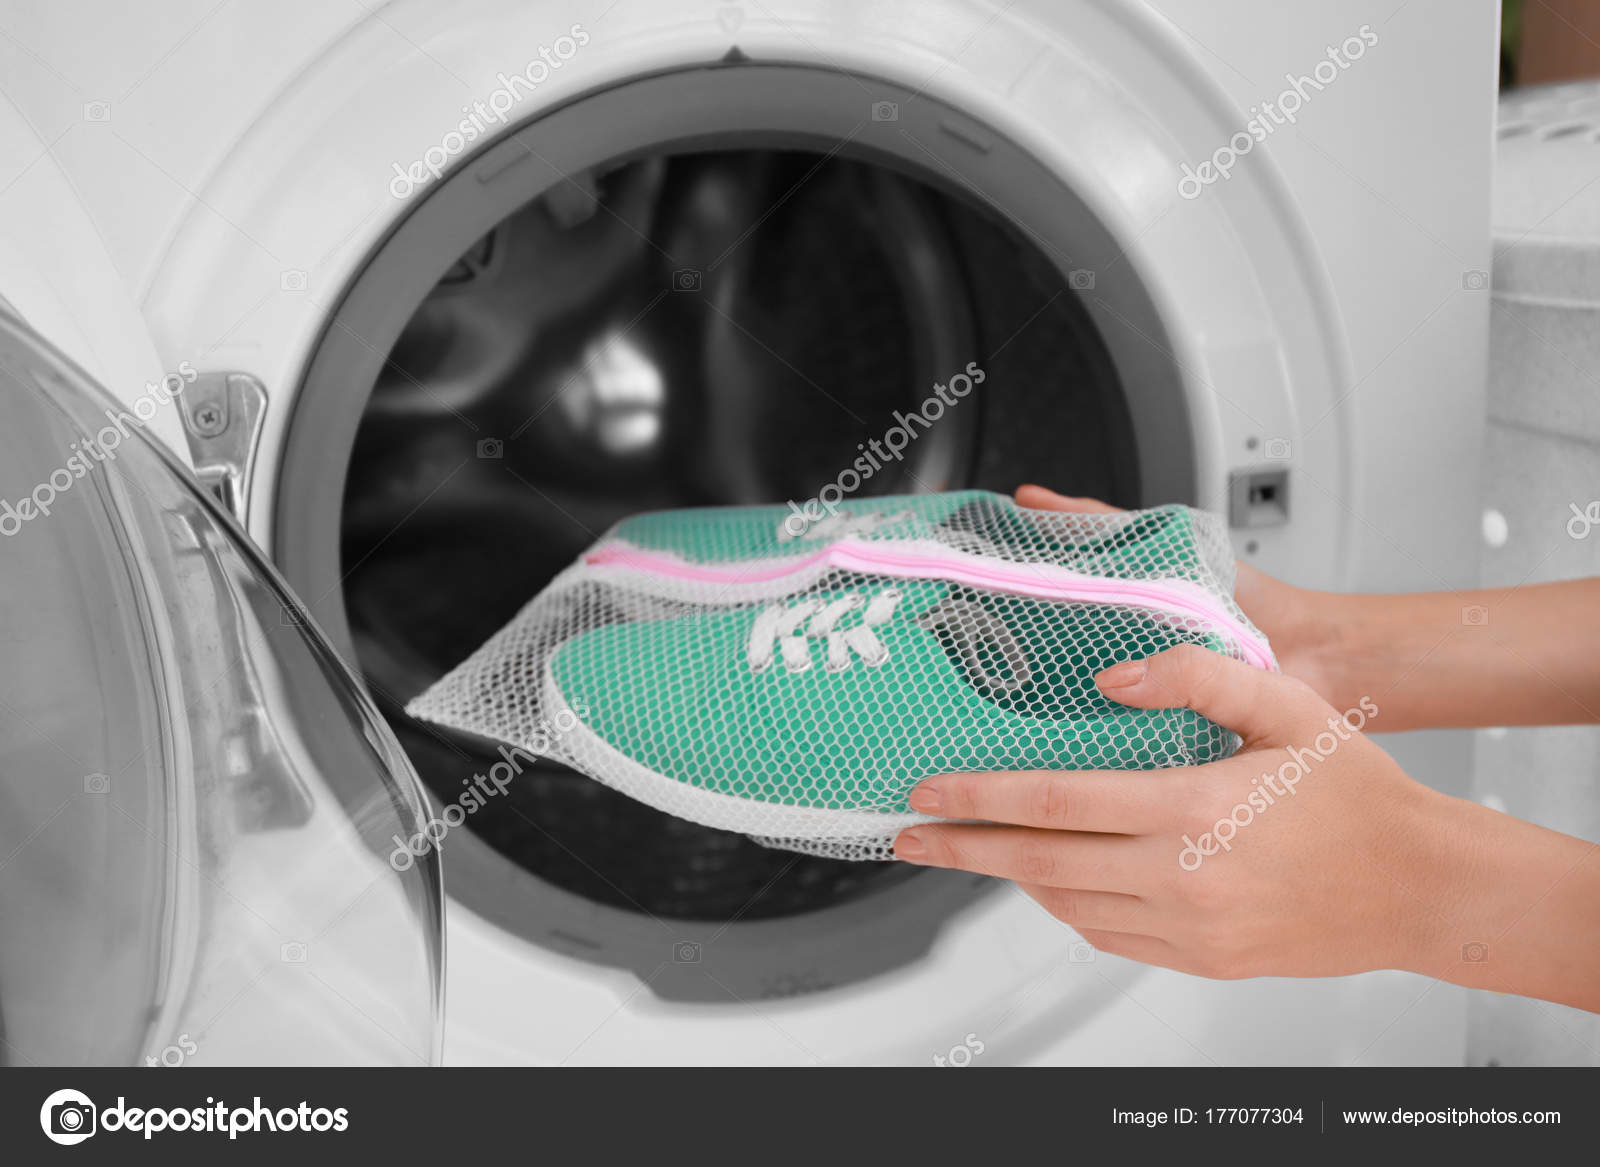 Стирают ли кеды в стиральной машине. Мешок для стирки кроссовок в стиральной машине. Вставка в стиральную машинку для стирки обуви. Стирка кроссовок в стиральной машине. Стирка обуви в стиральной машине.